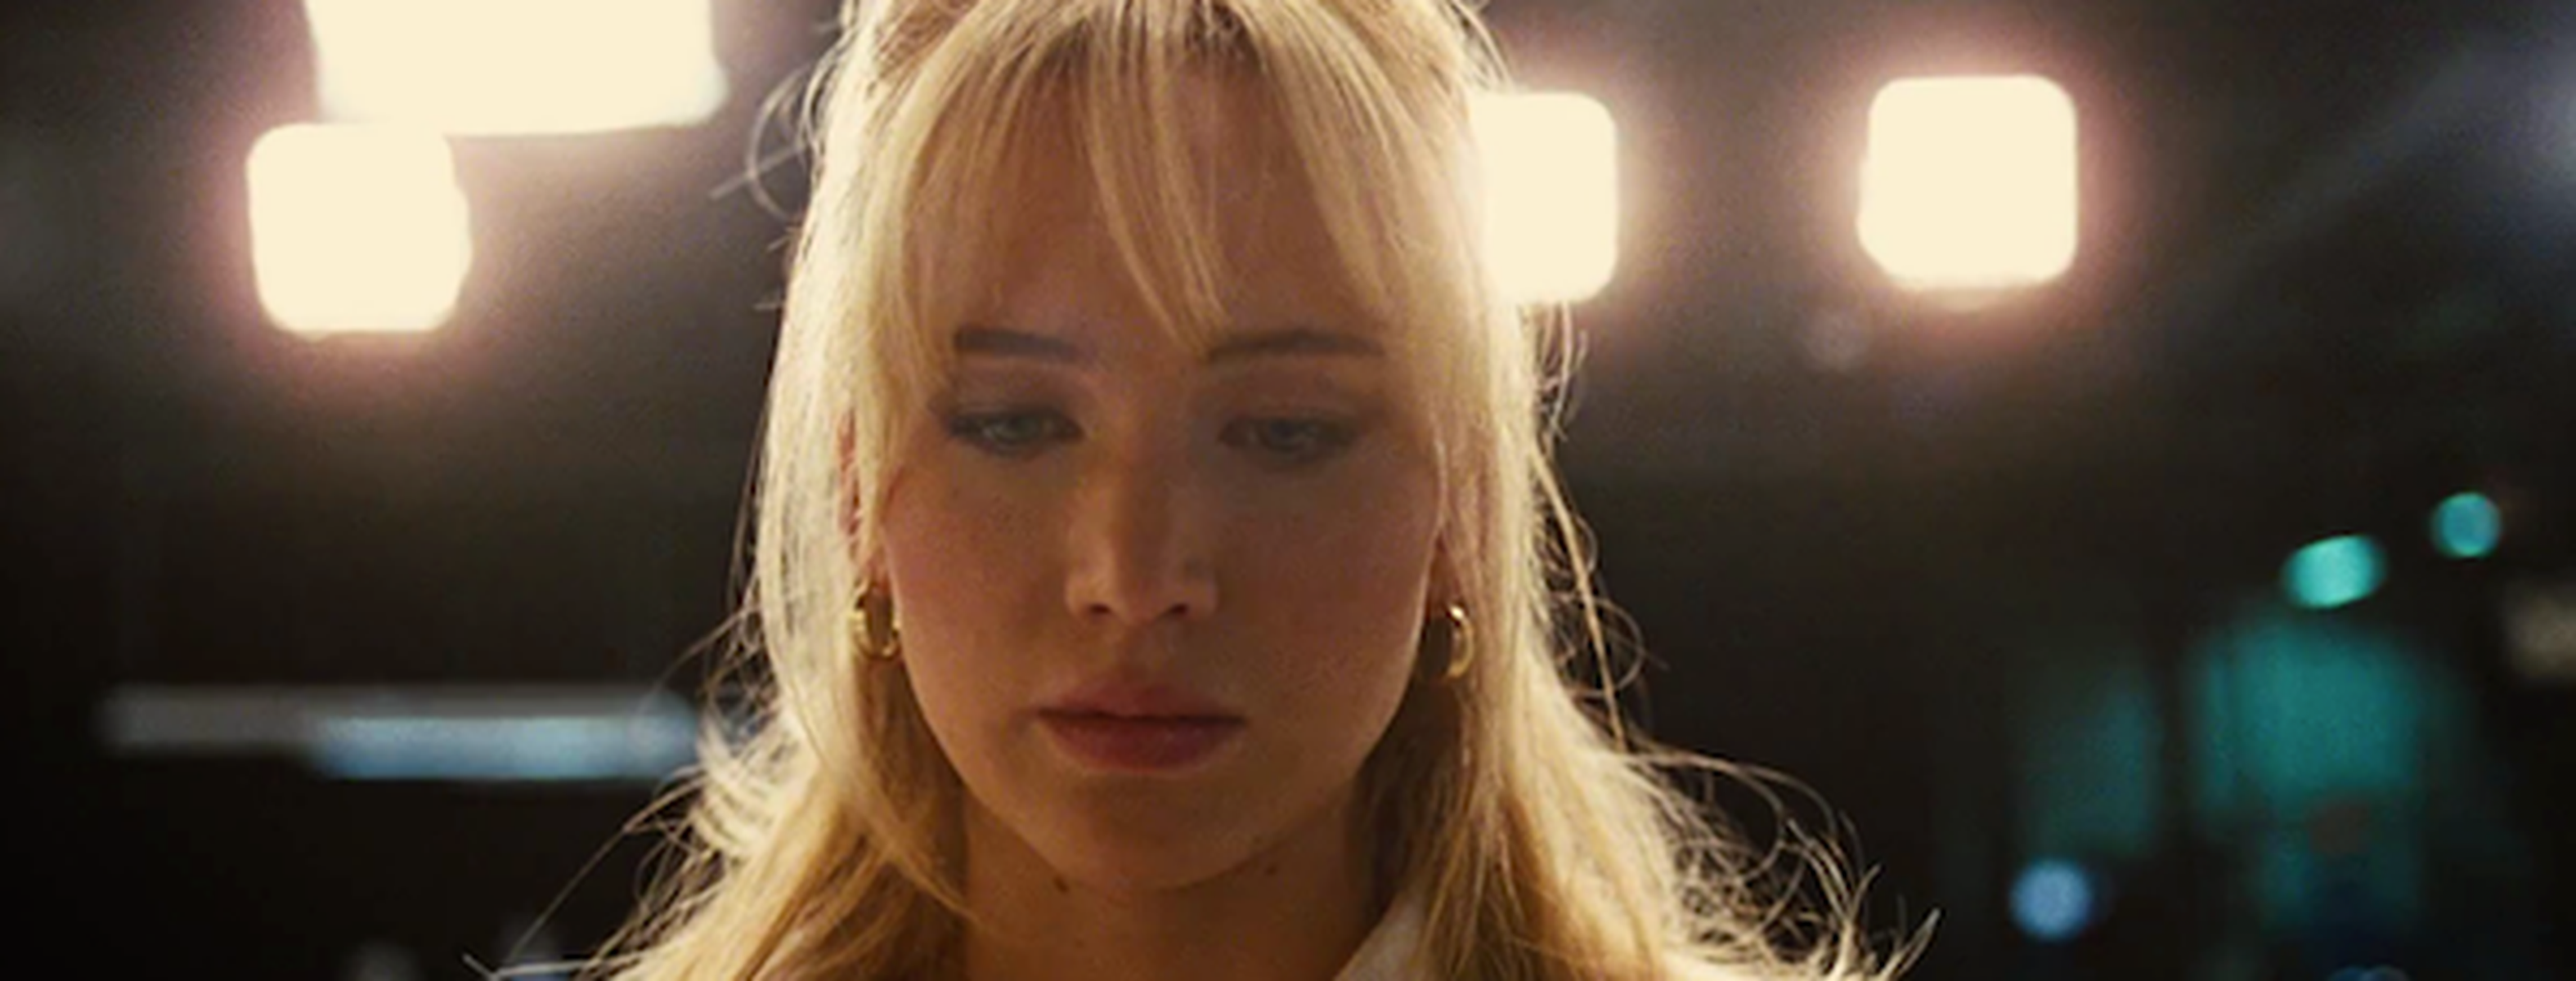 WATCH: Jennifer Lawrence Stuns in 'Joy' Trailer